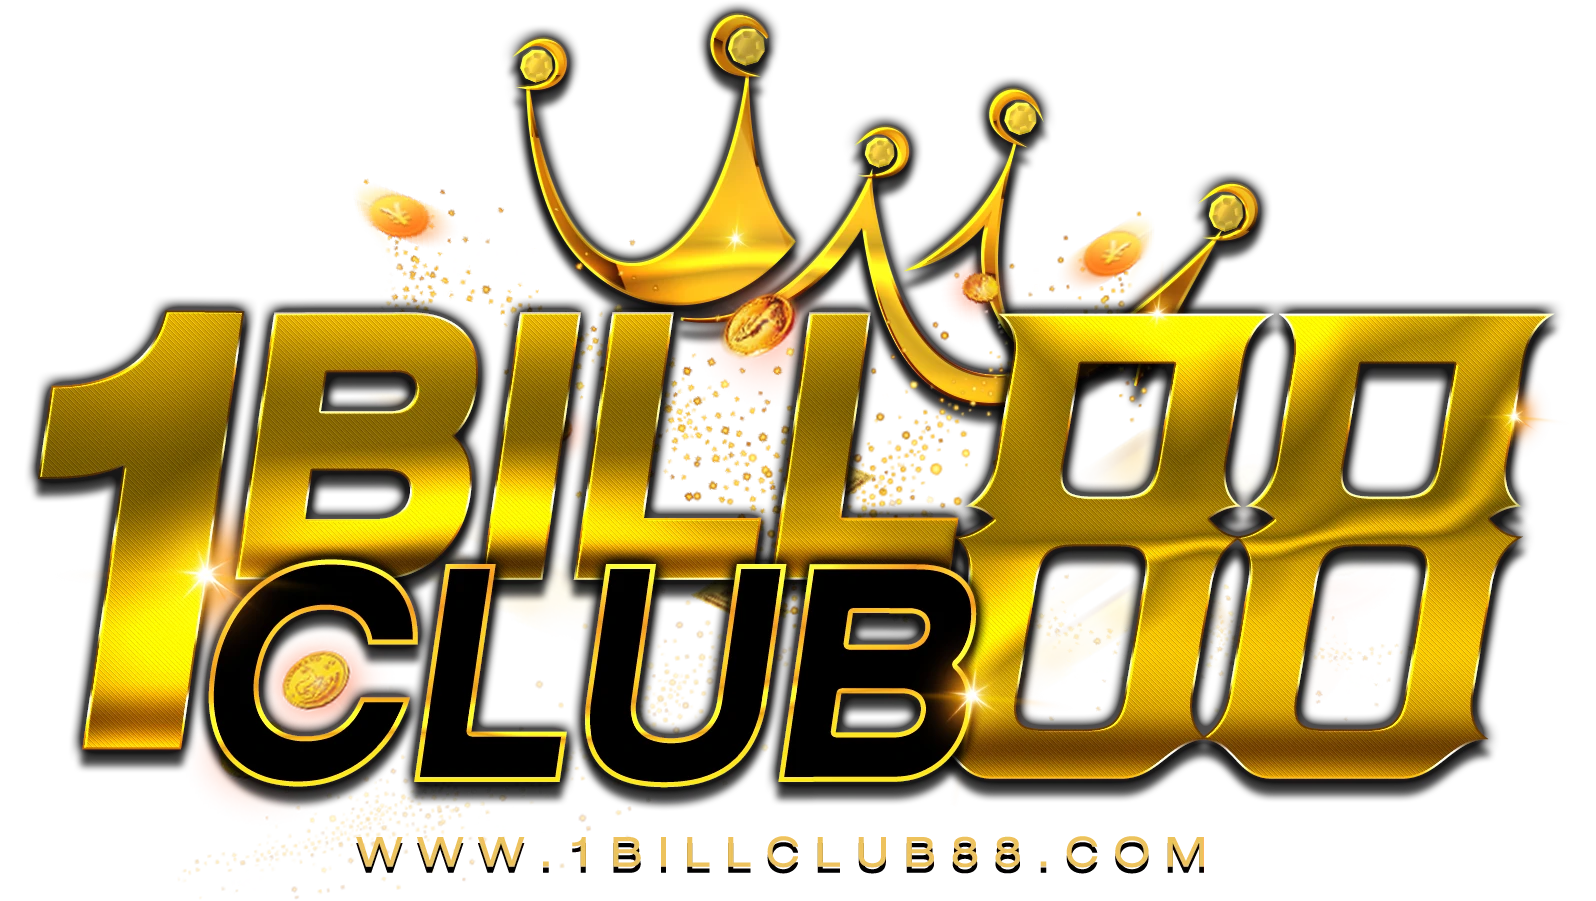 logo-1BILLCLUB88-ok